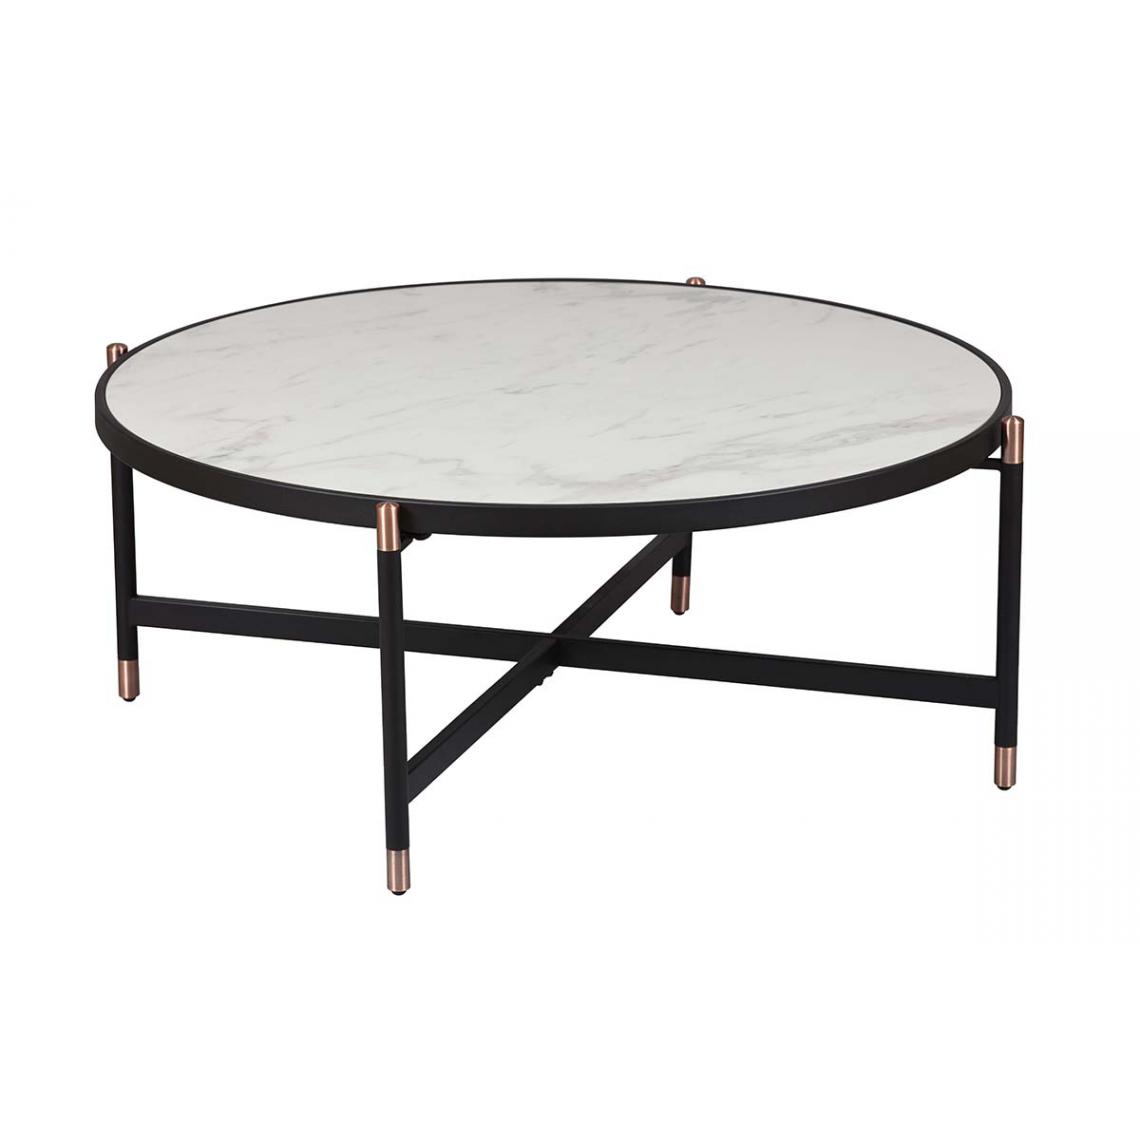 Pegane - Table basse en acier / céramique coloris anthracite mat - Diamètre 90 x Hauteur 38 cm - Tables basses